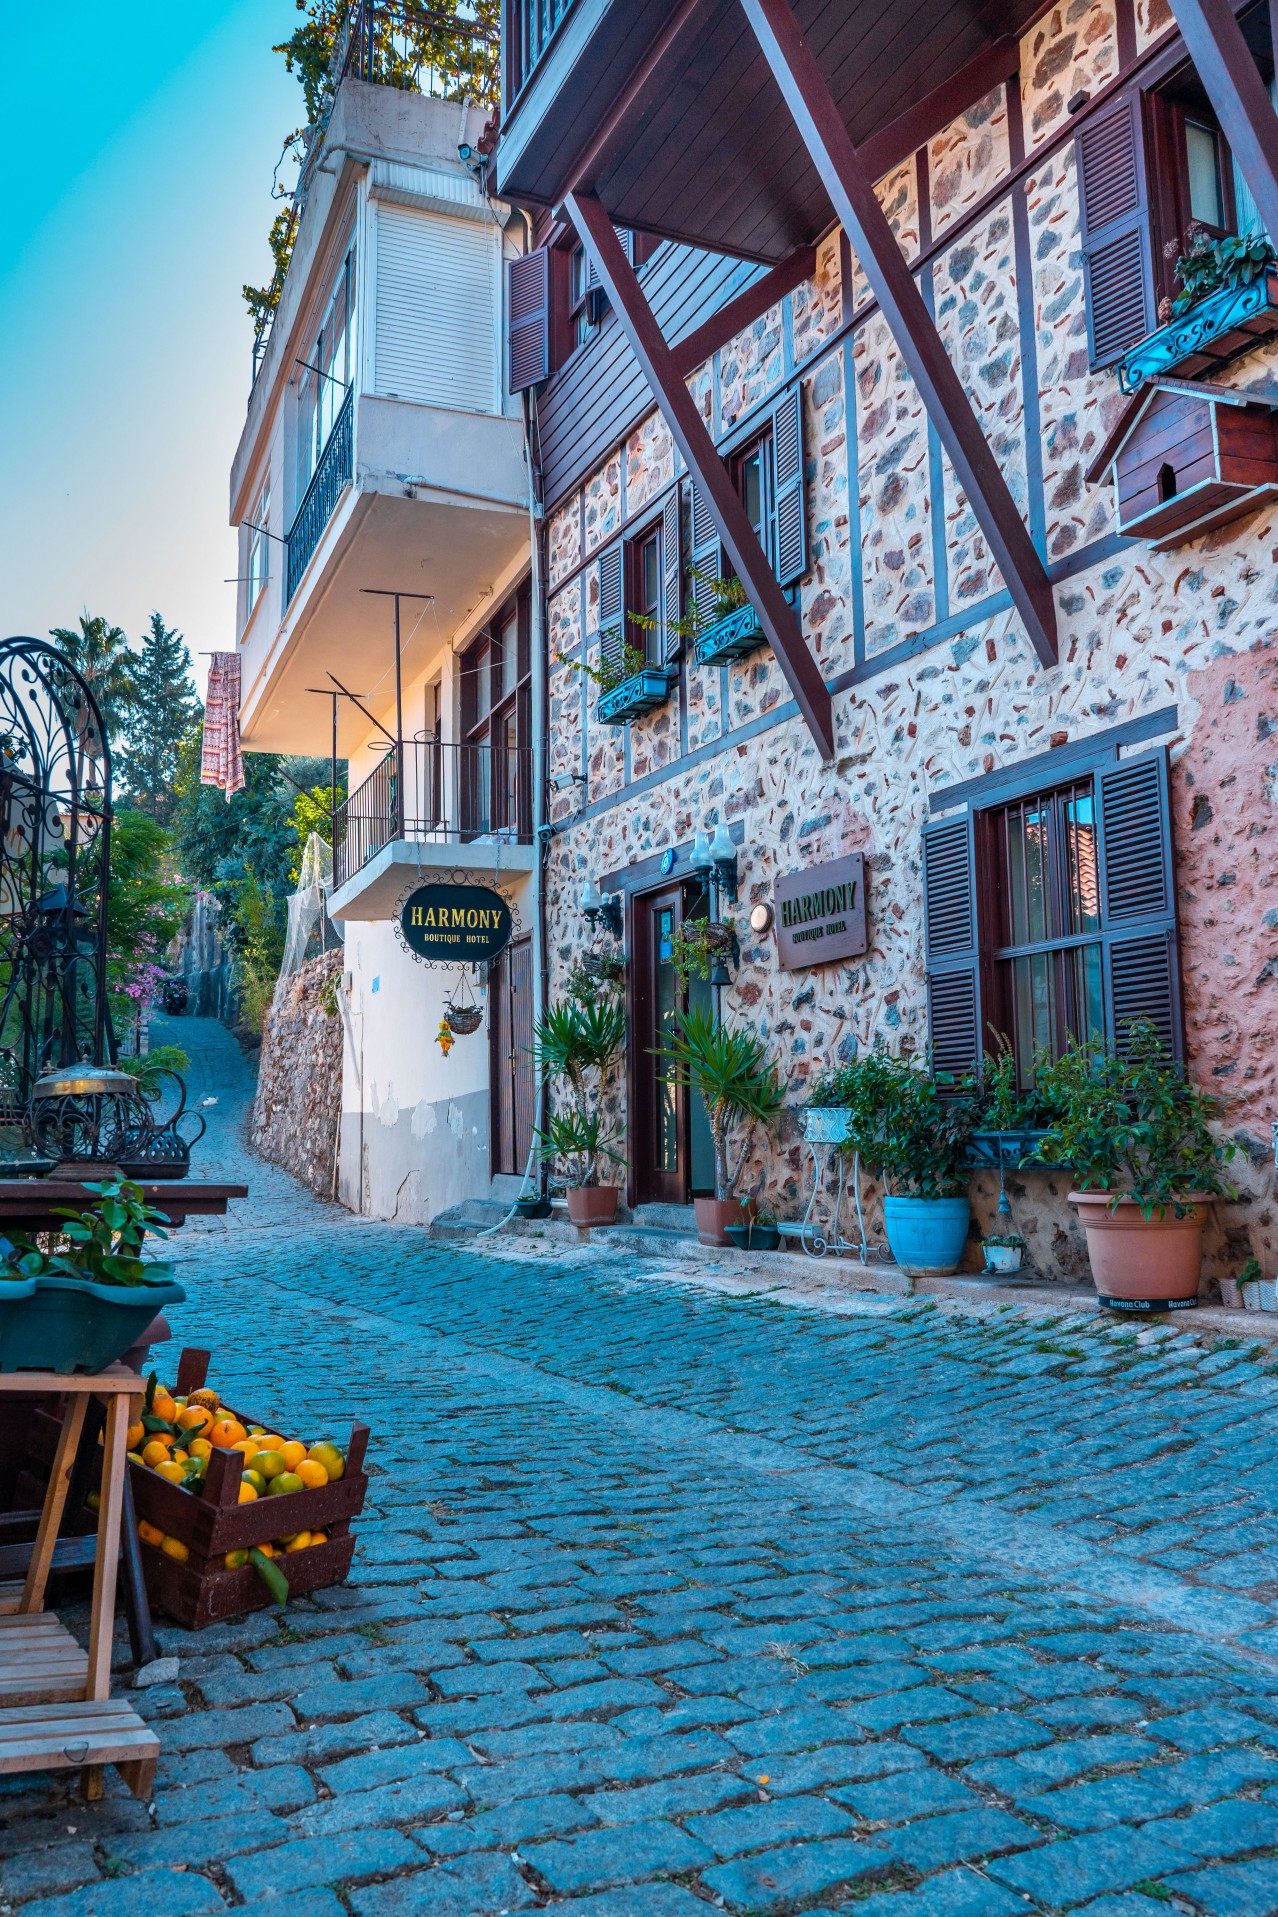 Hotel on the Turkish street